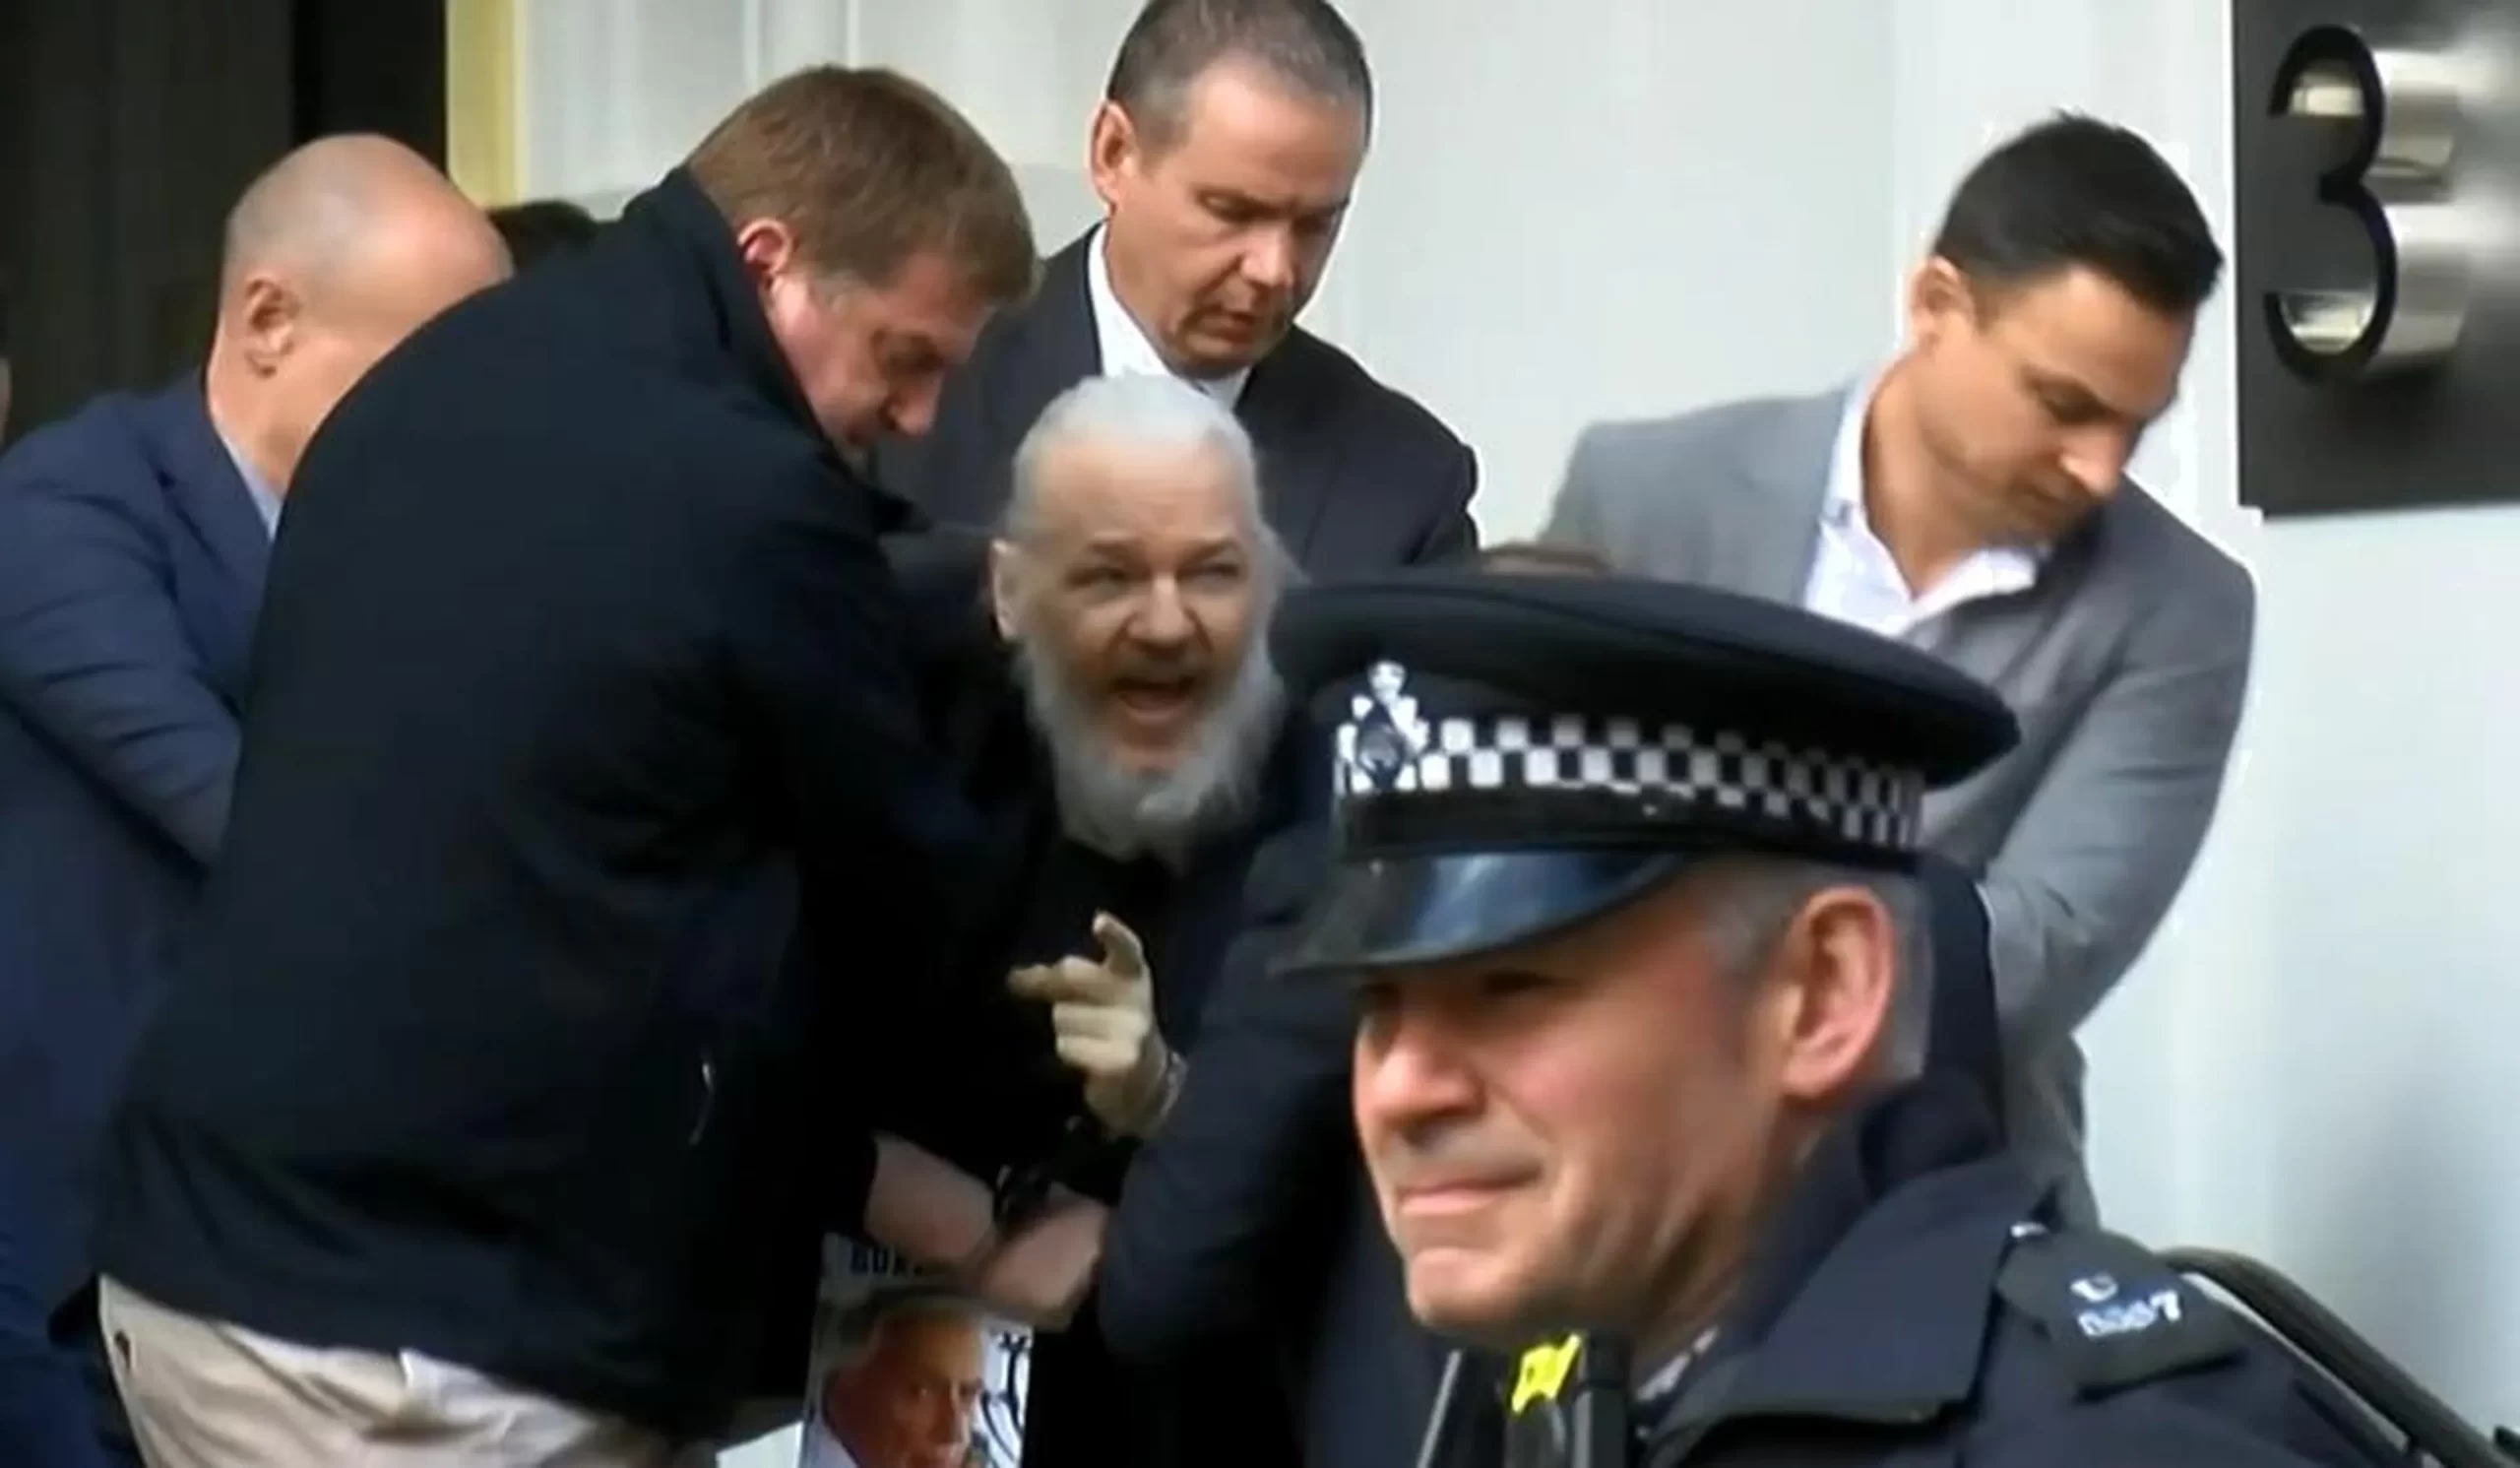 Detenido Julian Assange, fundador de Wikileaks, y podría ser extraditado a Estados Unidos | Computer